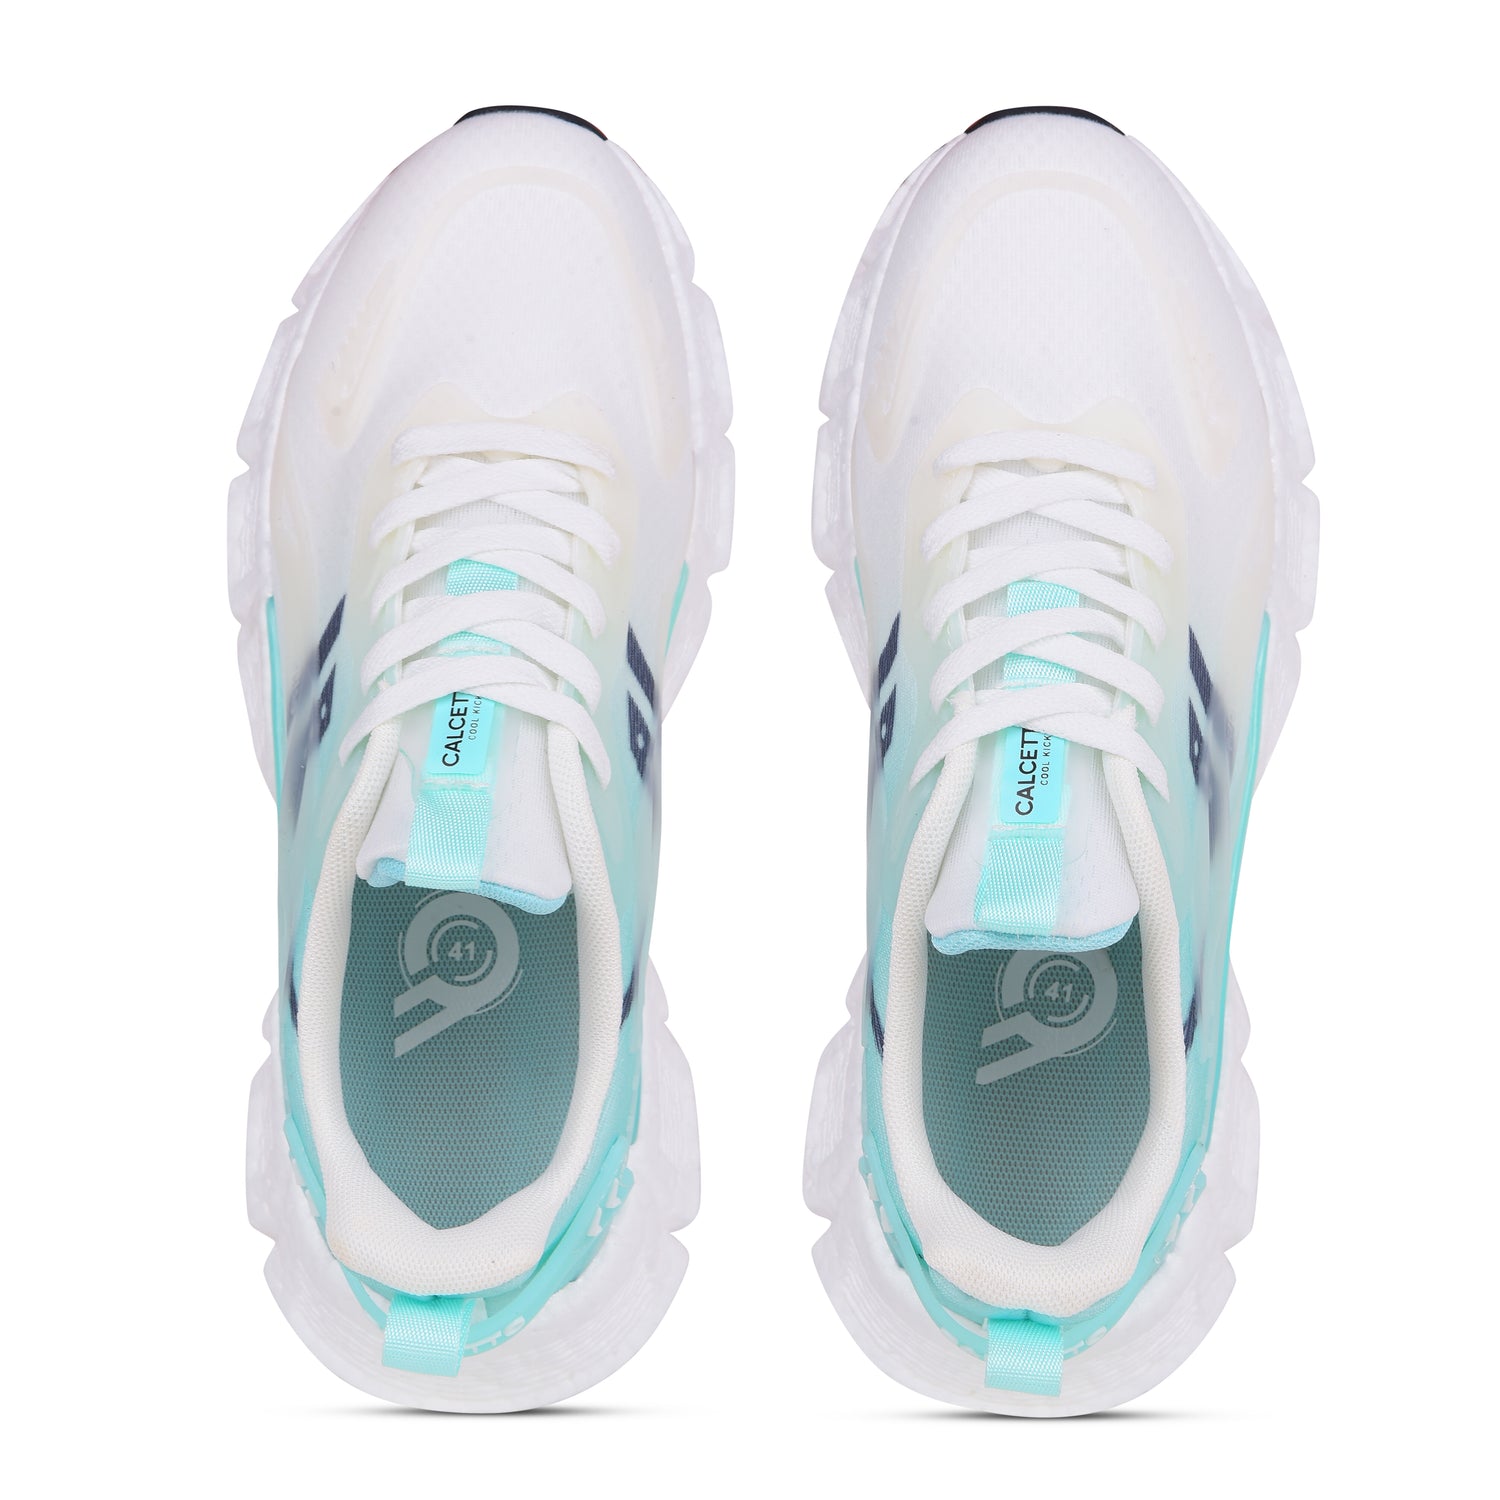 Calcetto CLT-1015 White Aqua Casual Shoe For Men